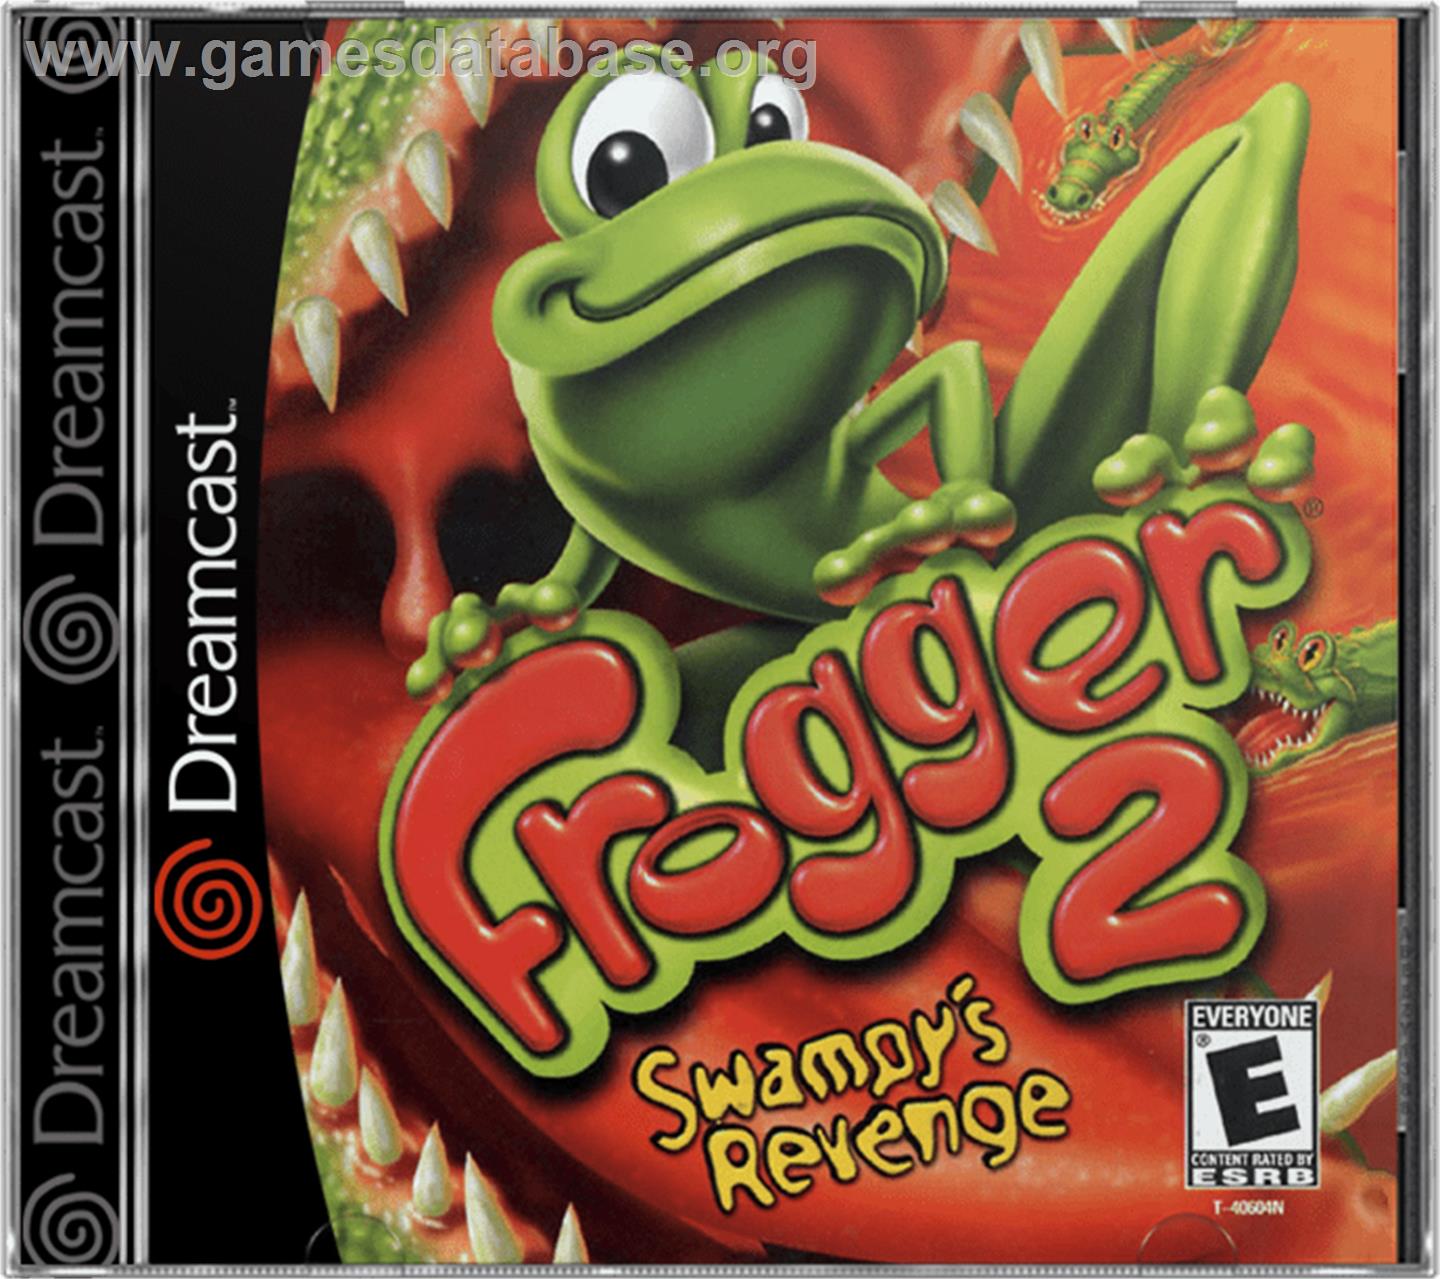 Frogger 2: Swampy's Revenge - Sega Dreamcast - Artwork - Box